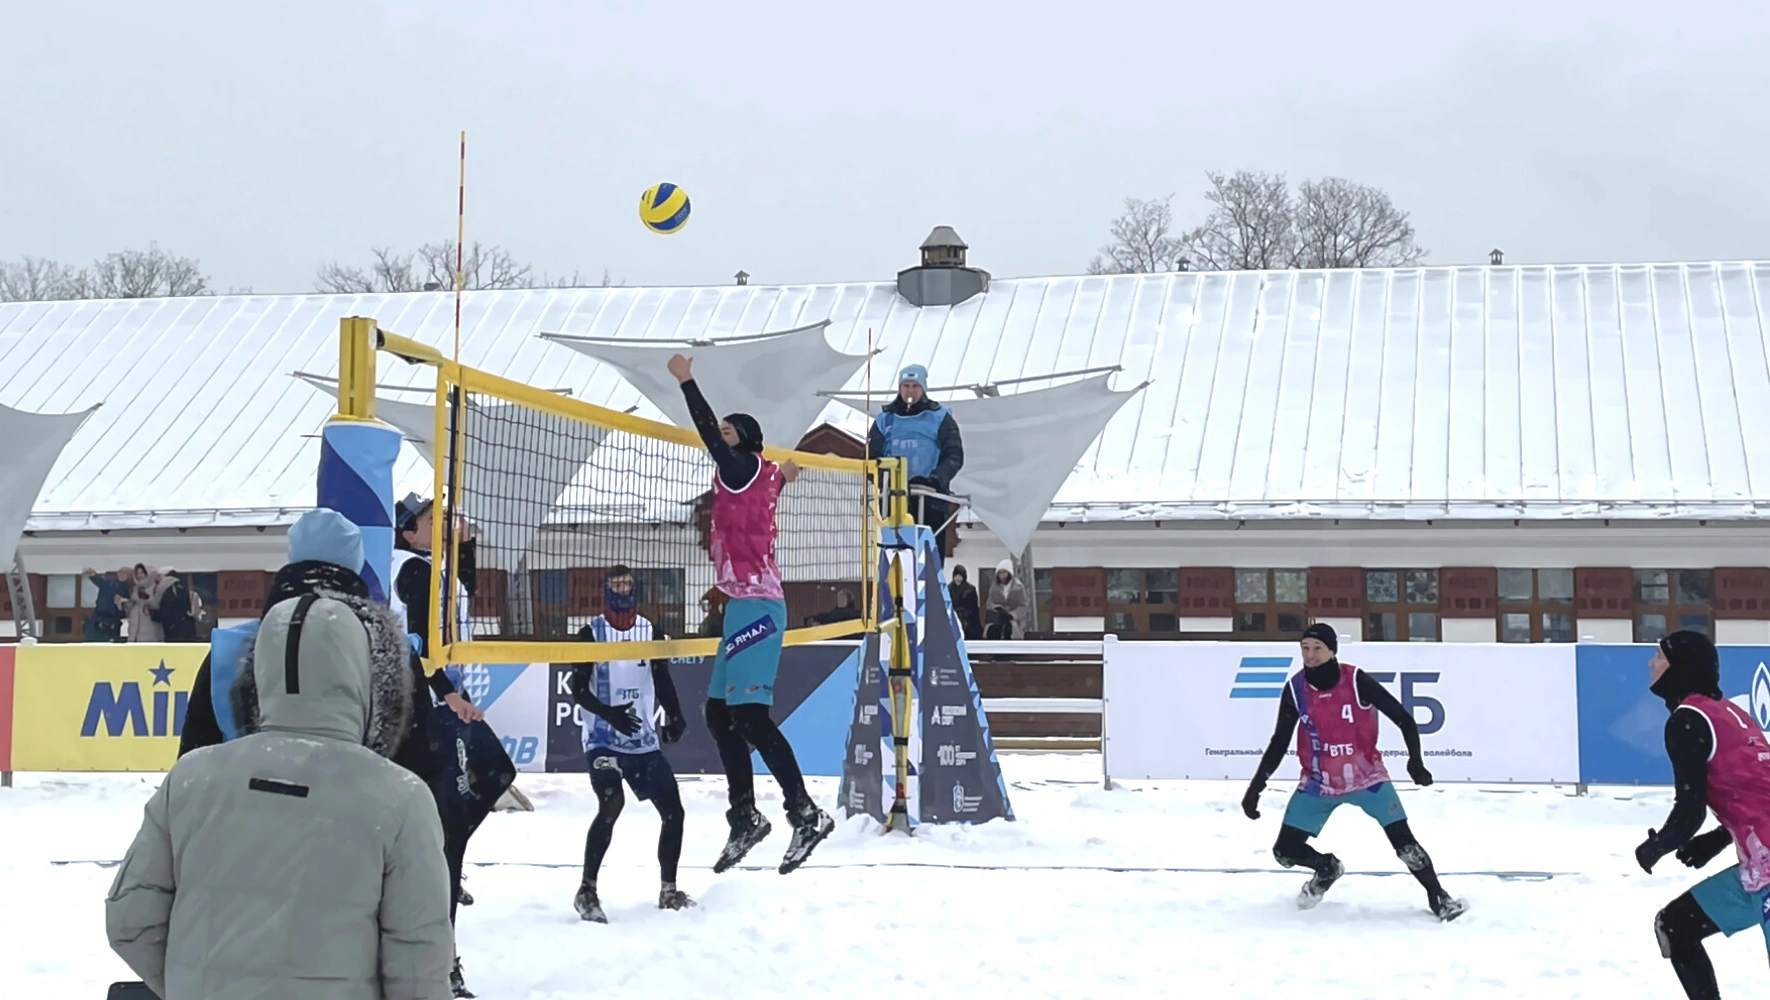 Ямальский «Факел» обошёл московскую команду в волейболе на снегу